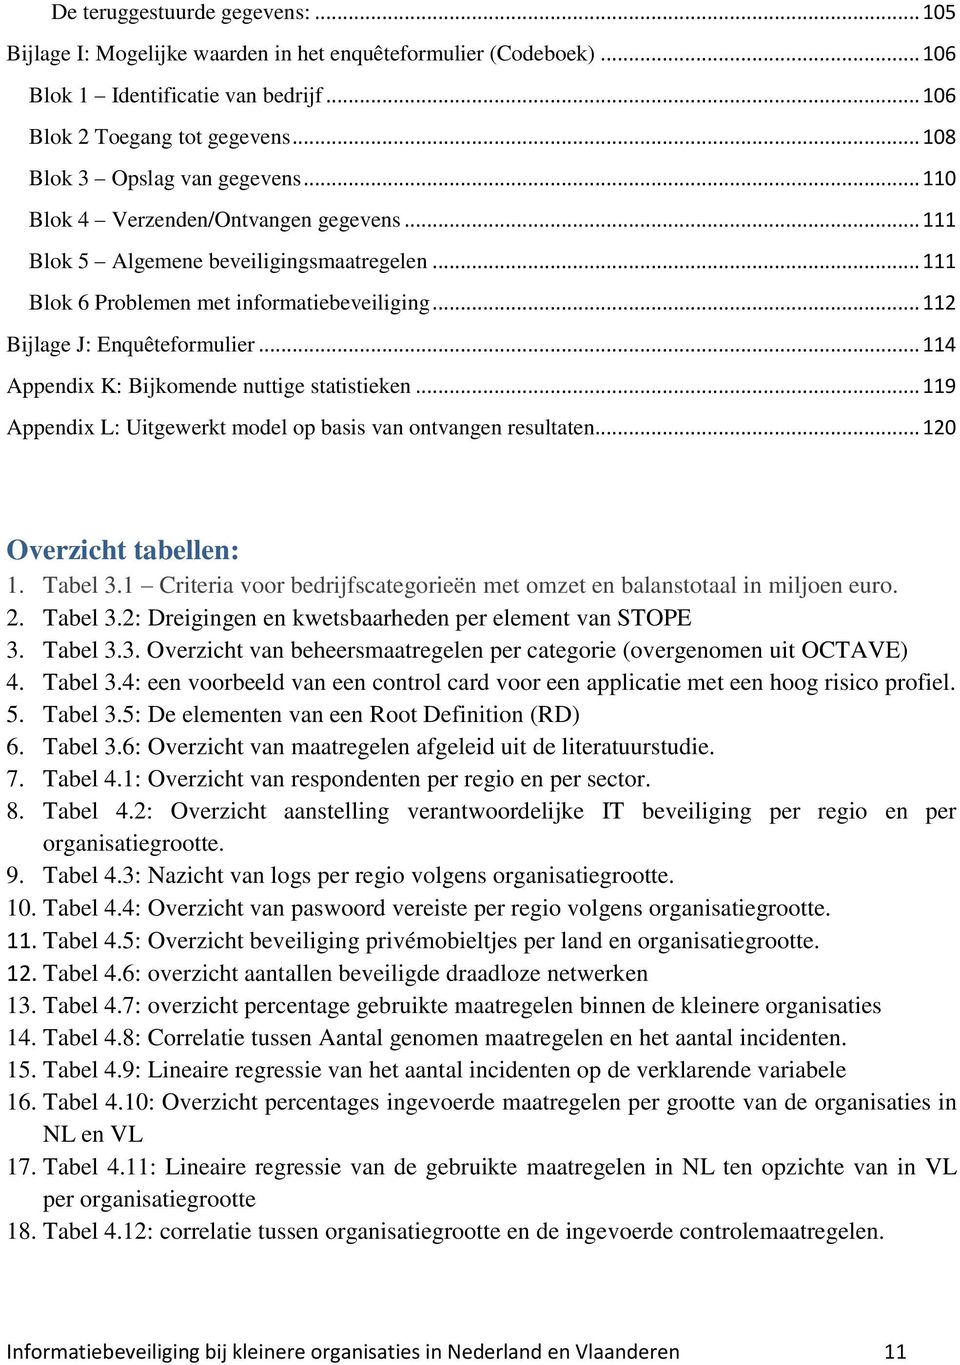 .. 112 Bijlage J: Enquêteformulier... 114 Appendix K: Bijkomende nuttige statistieken... 119 Appendix L: Uitgewerkt model op basis van ontvangen resultaten... 120 Overzicht tabellen: 1. Tabel 3.